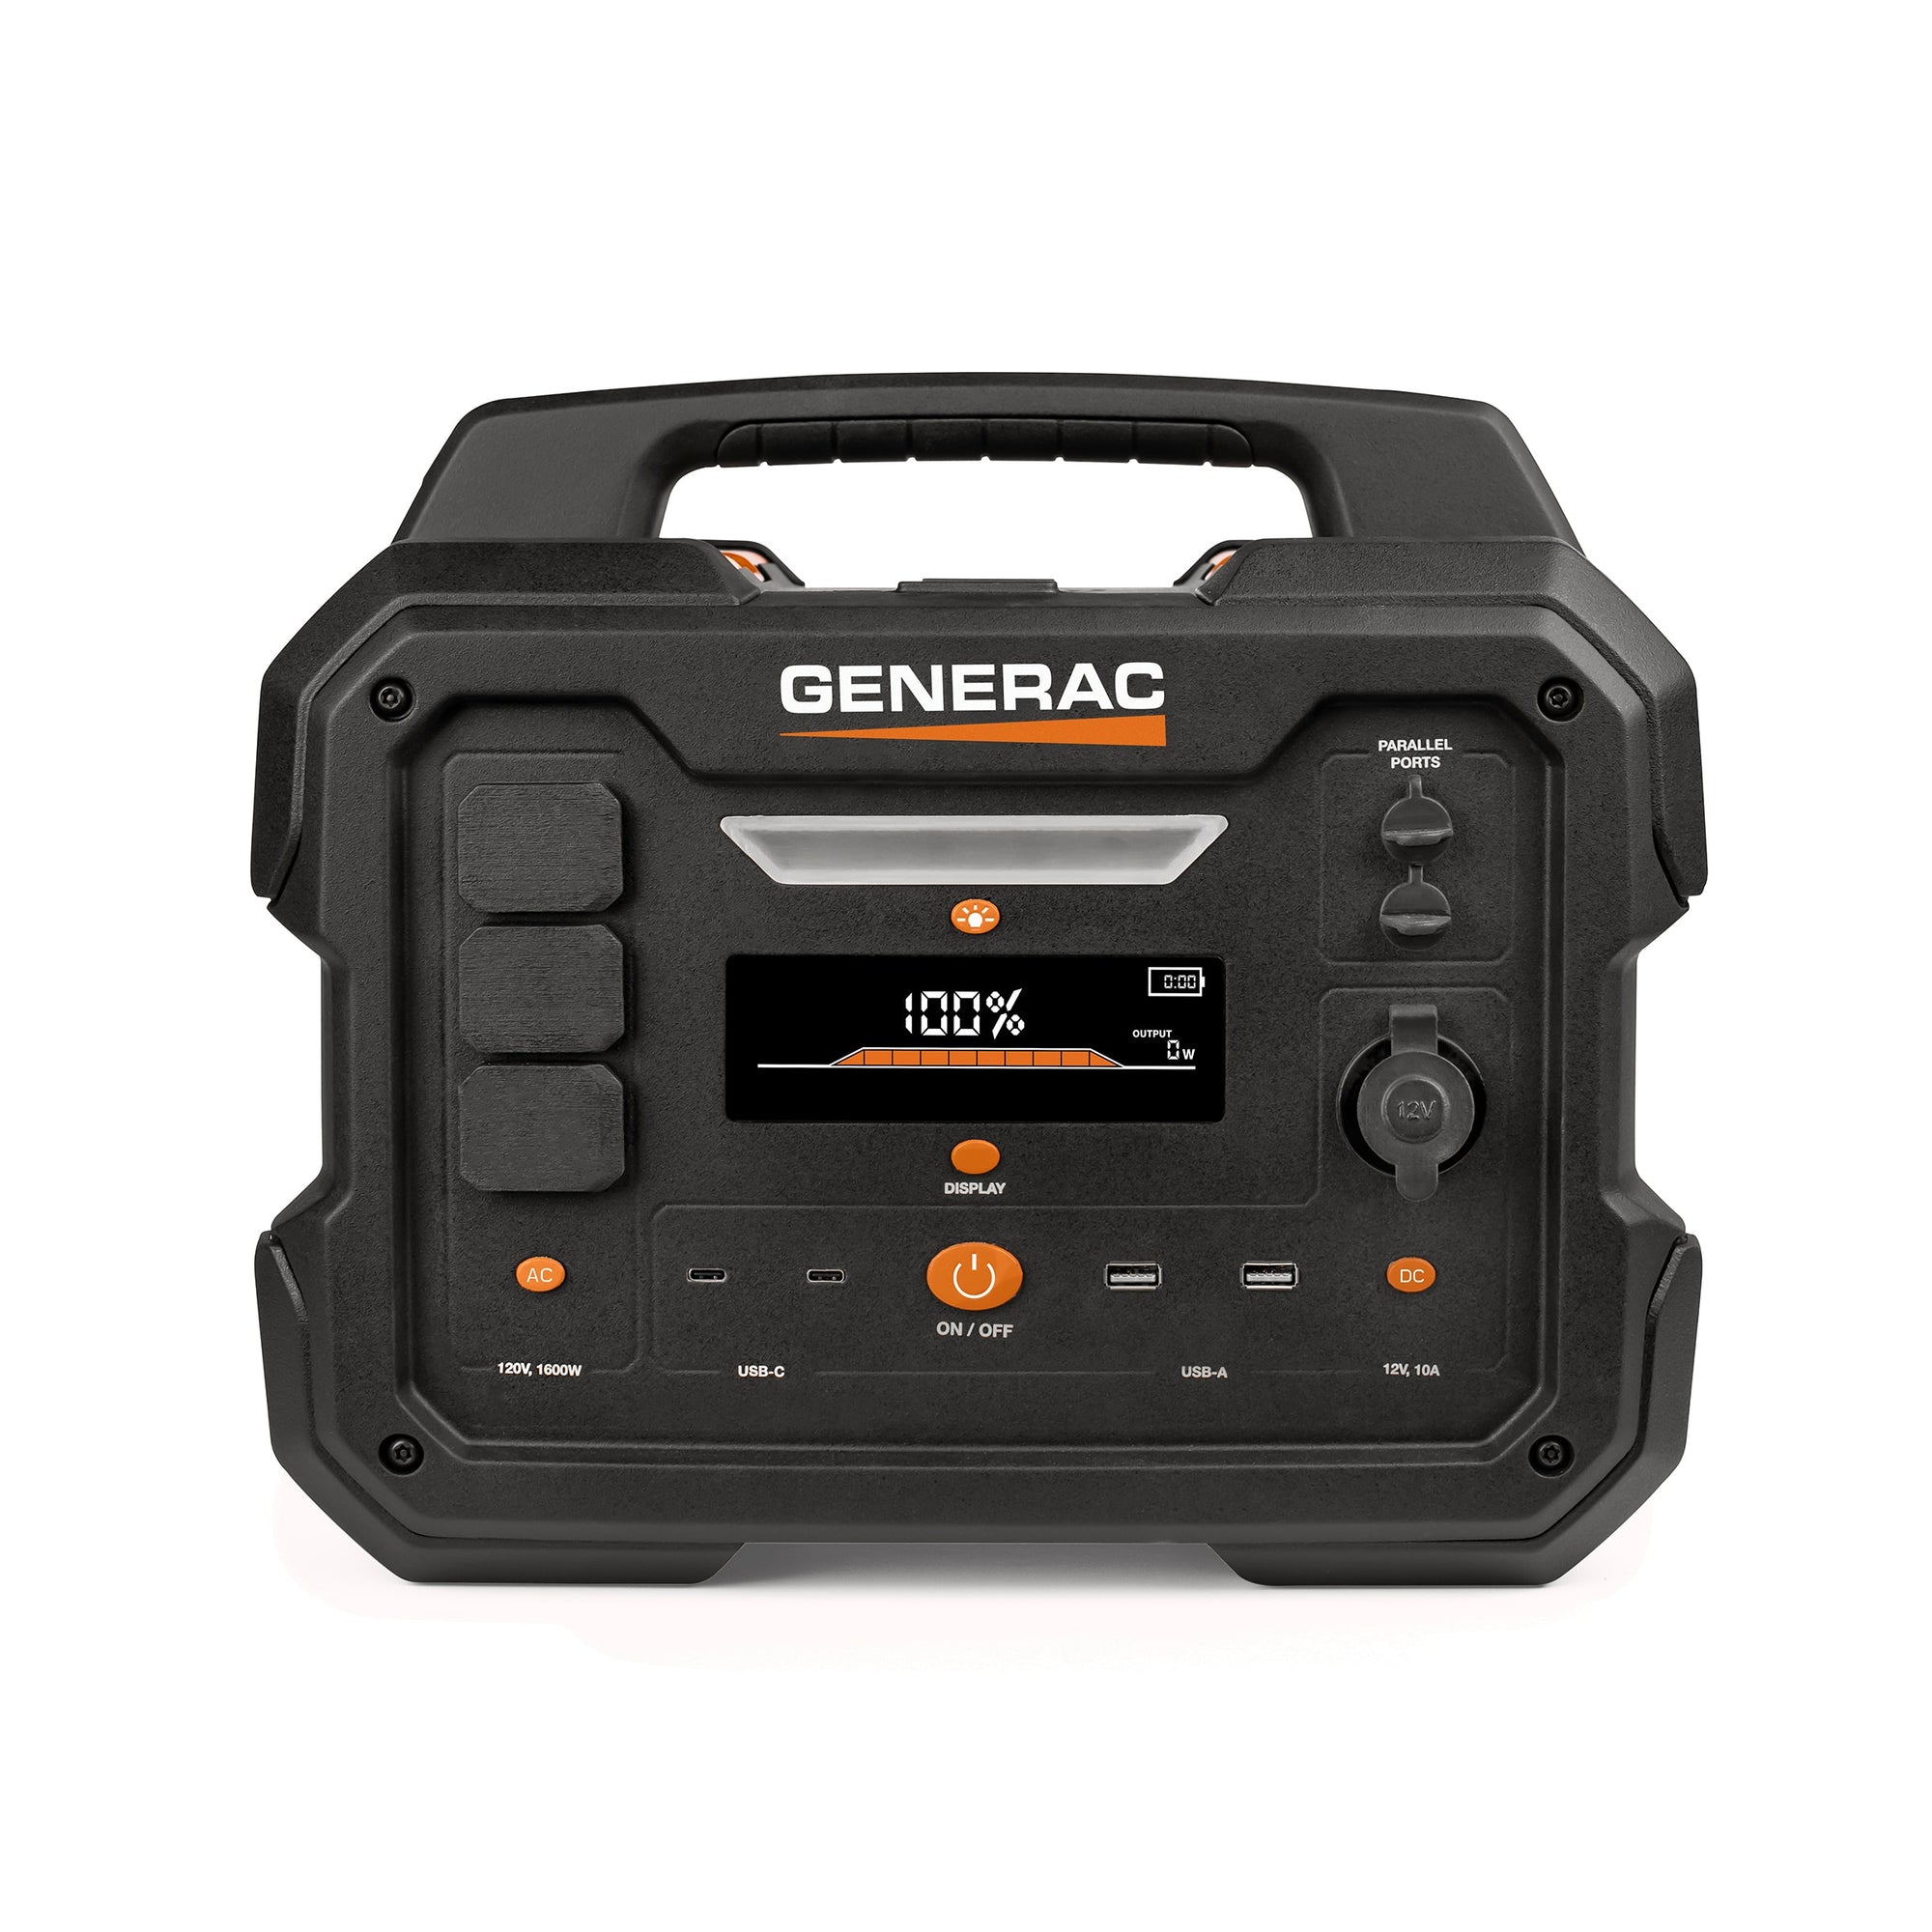 Generac GB1000 1600W/ 3200W 1086Wh Portable Power Station New